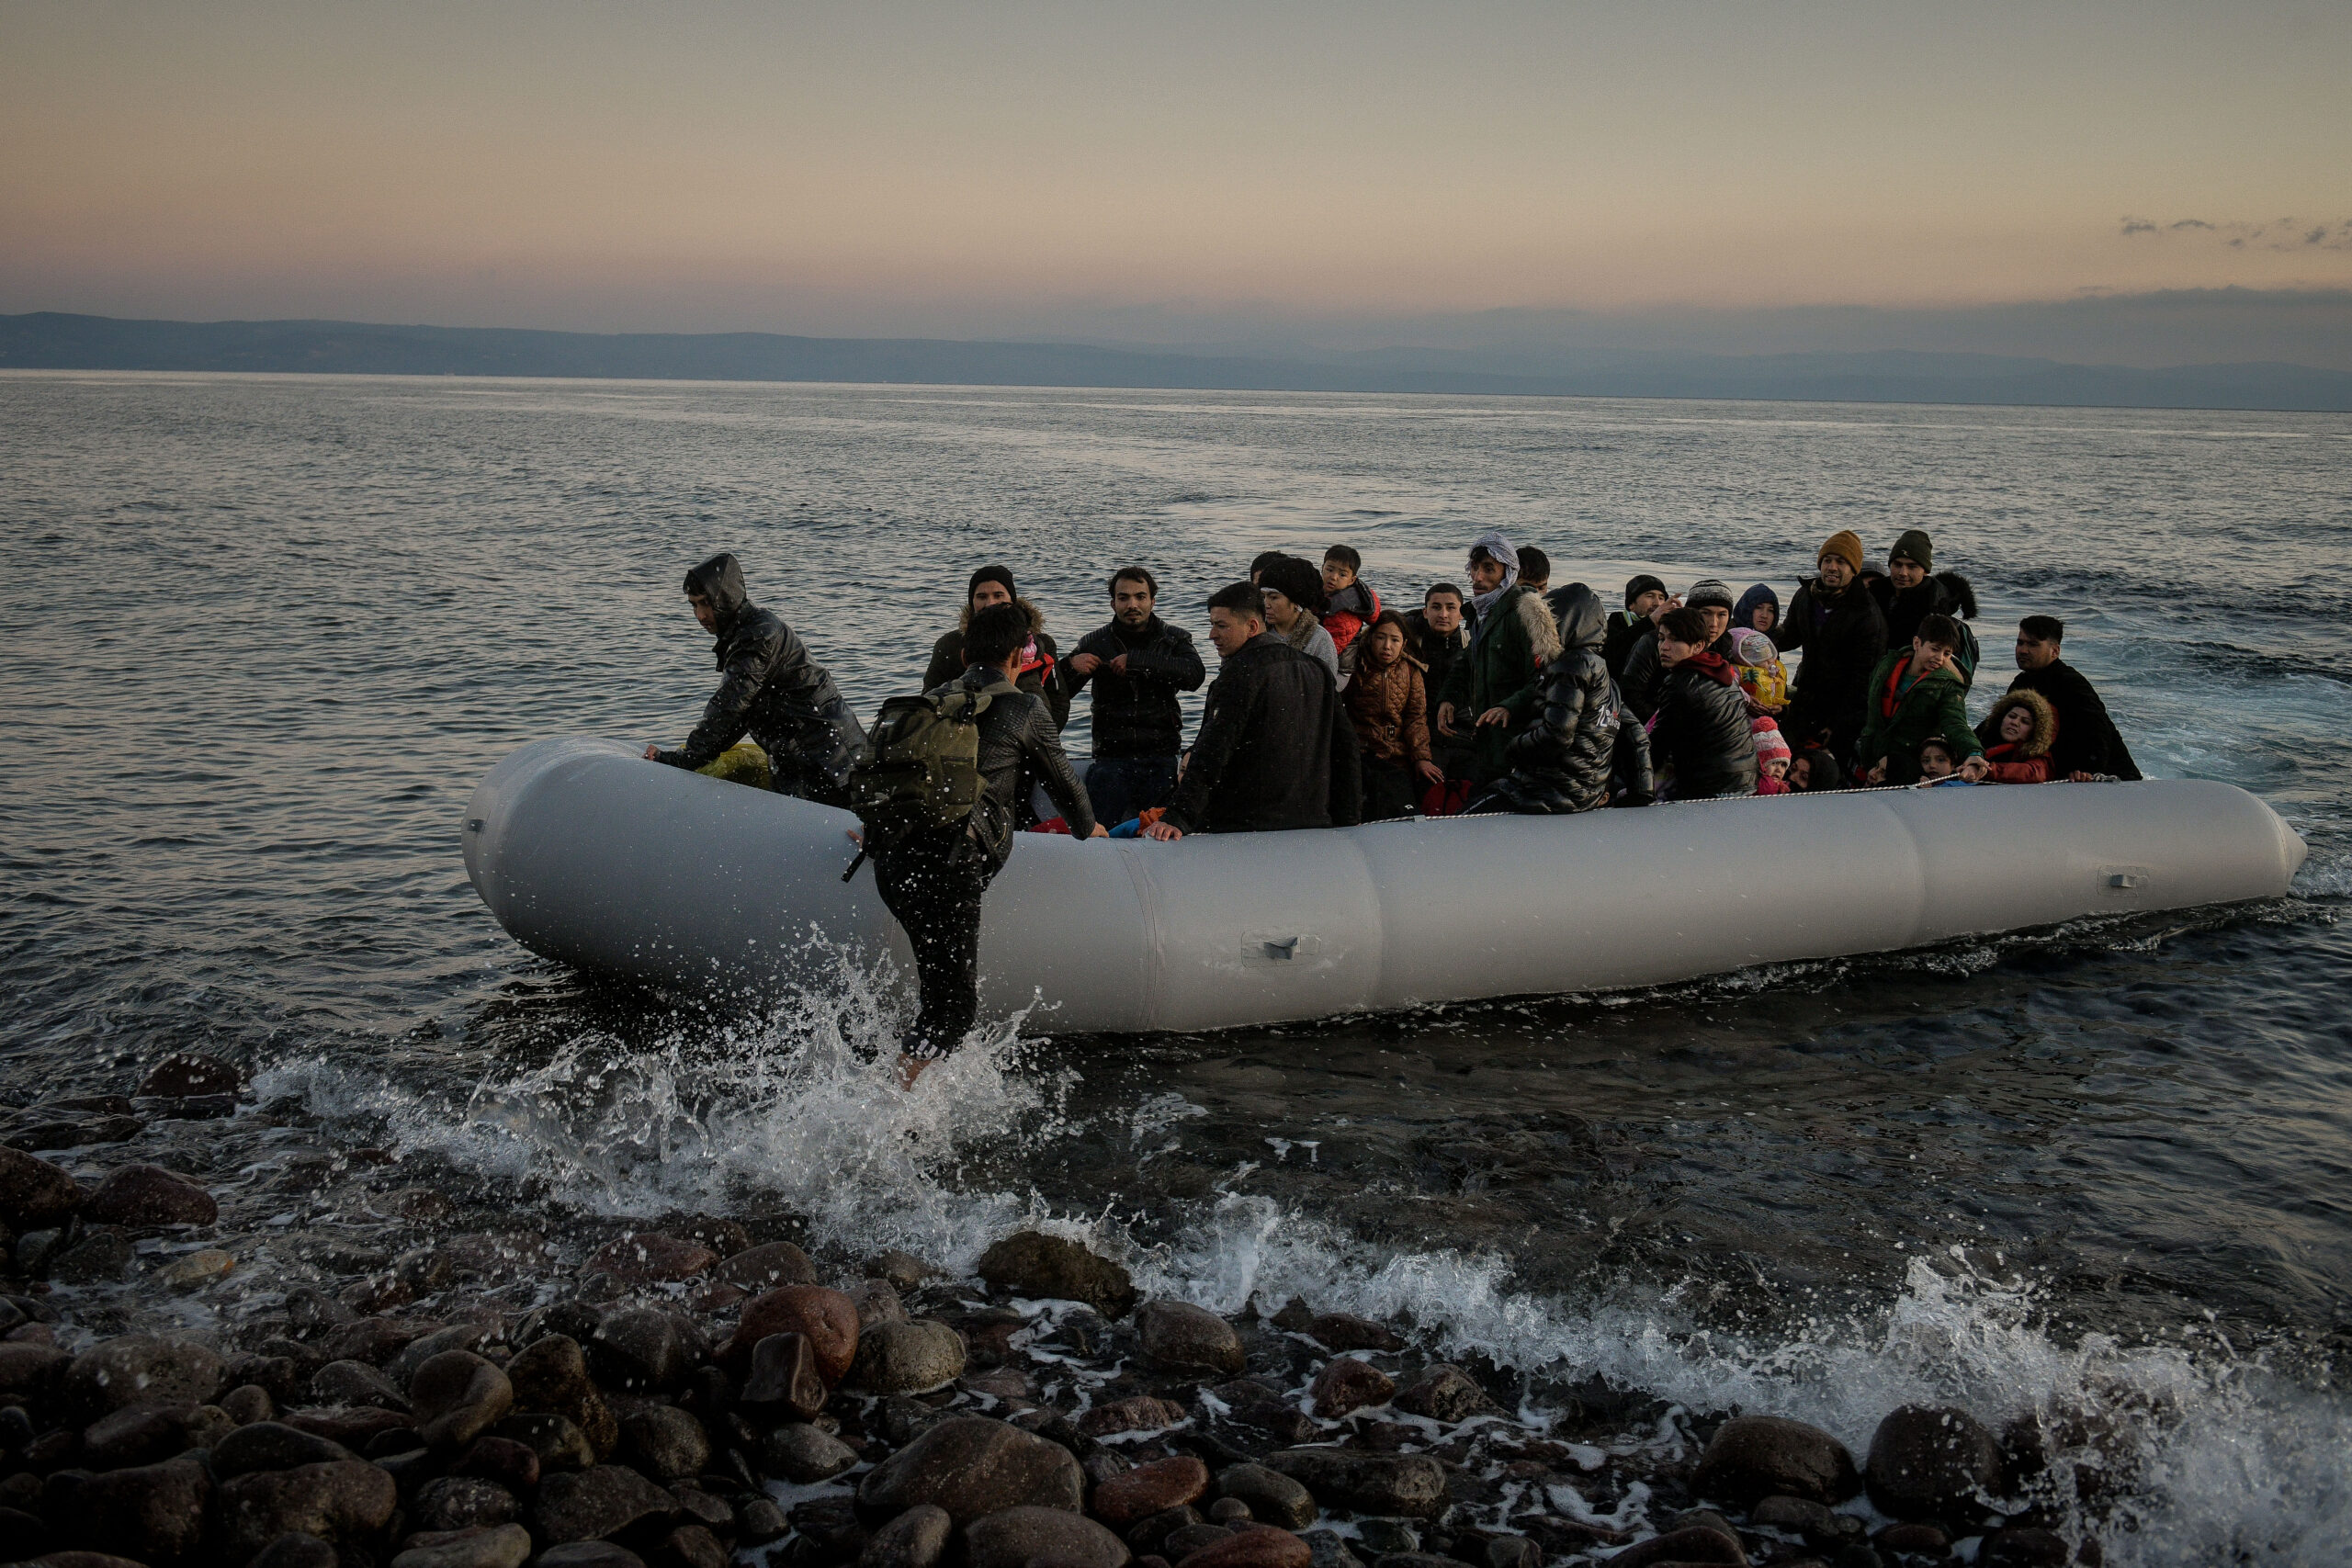 Ανησυχία προκαλούν οι αυξανόμενες μεταναστευτικές ροές: Ο Δ. Καιρίδης σε δομές στη Χίο – Δύο ναυάγια σε λίγες ώρες στην Ιταλία